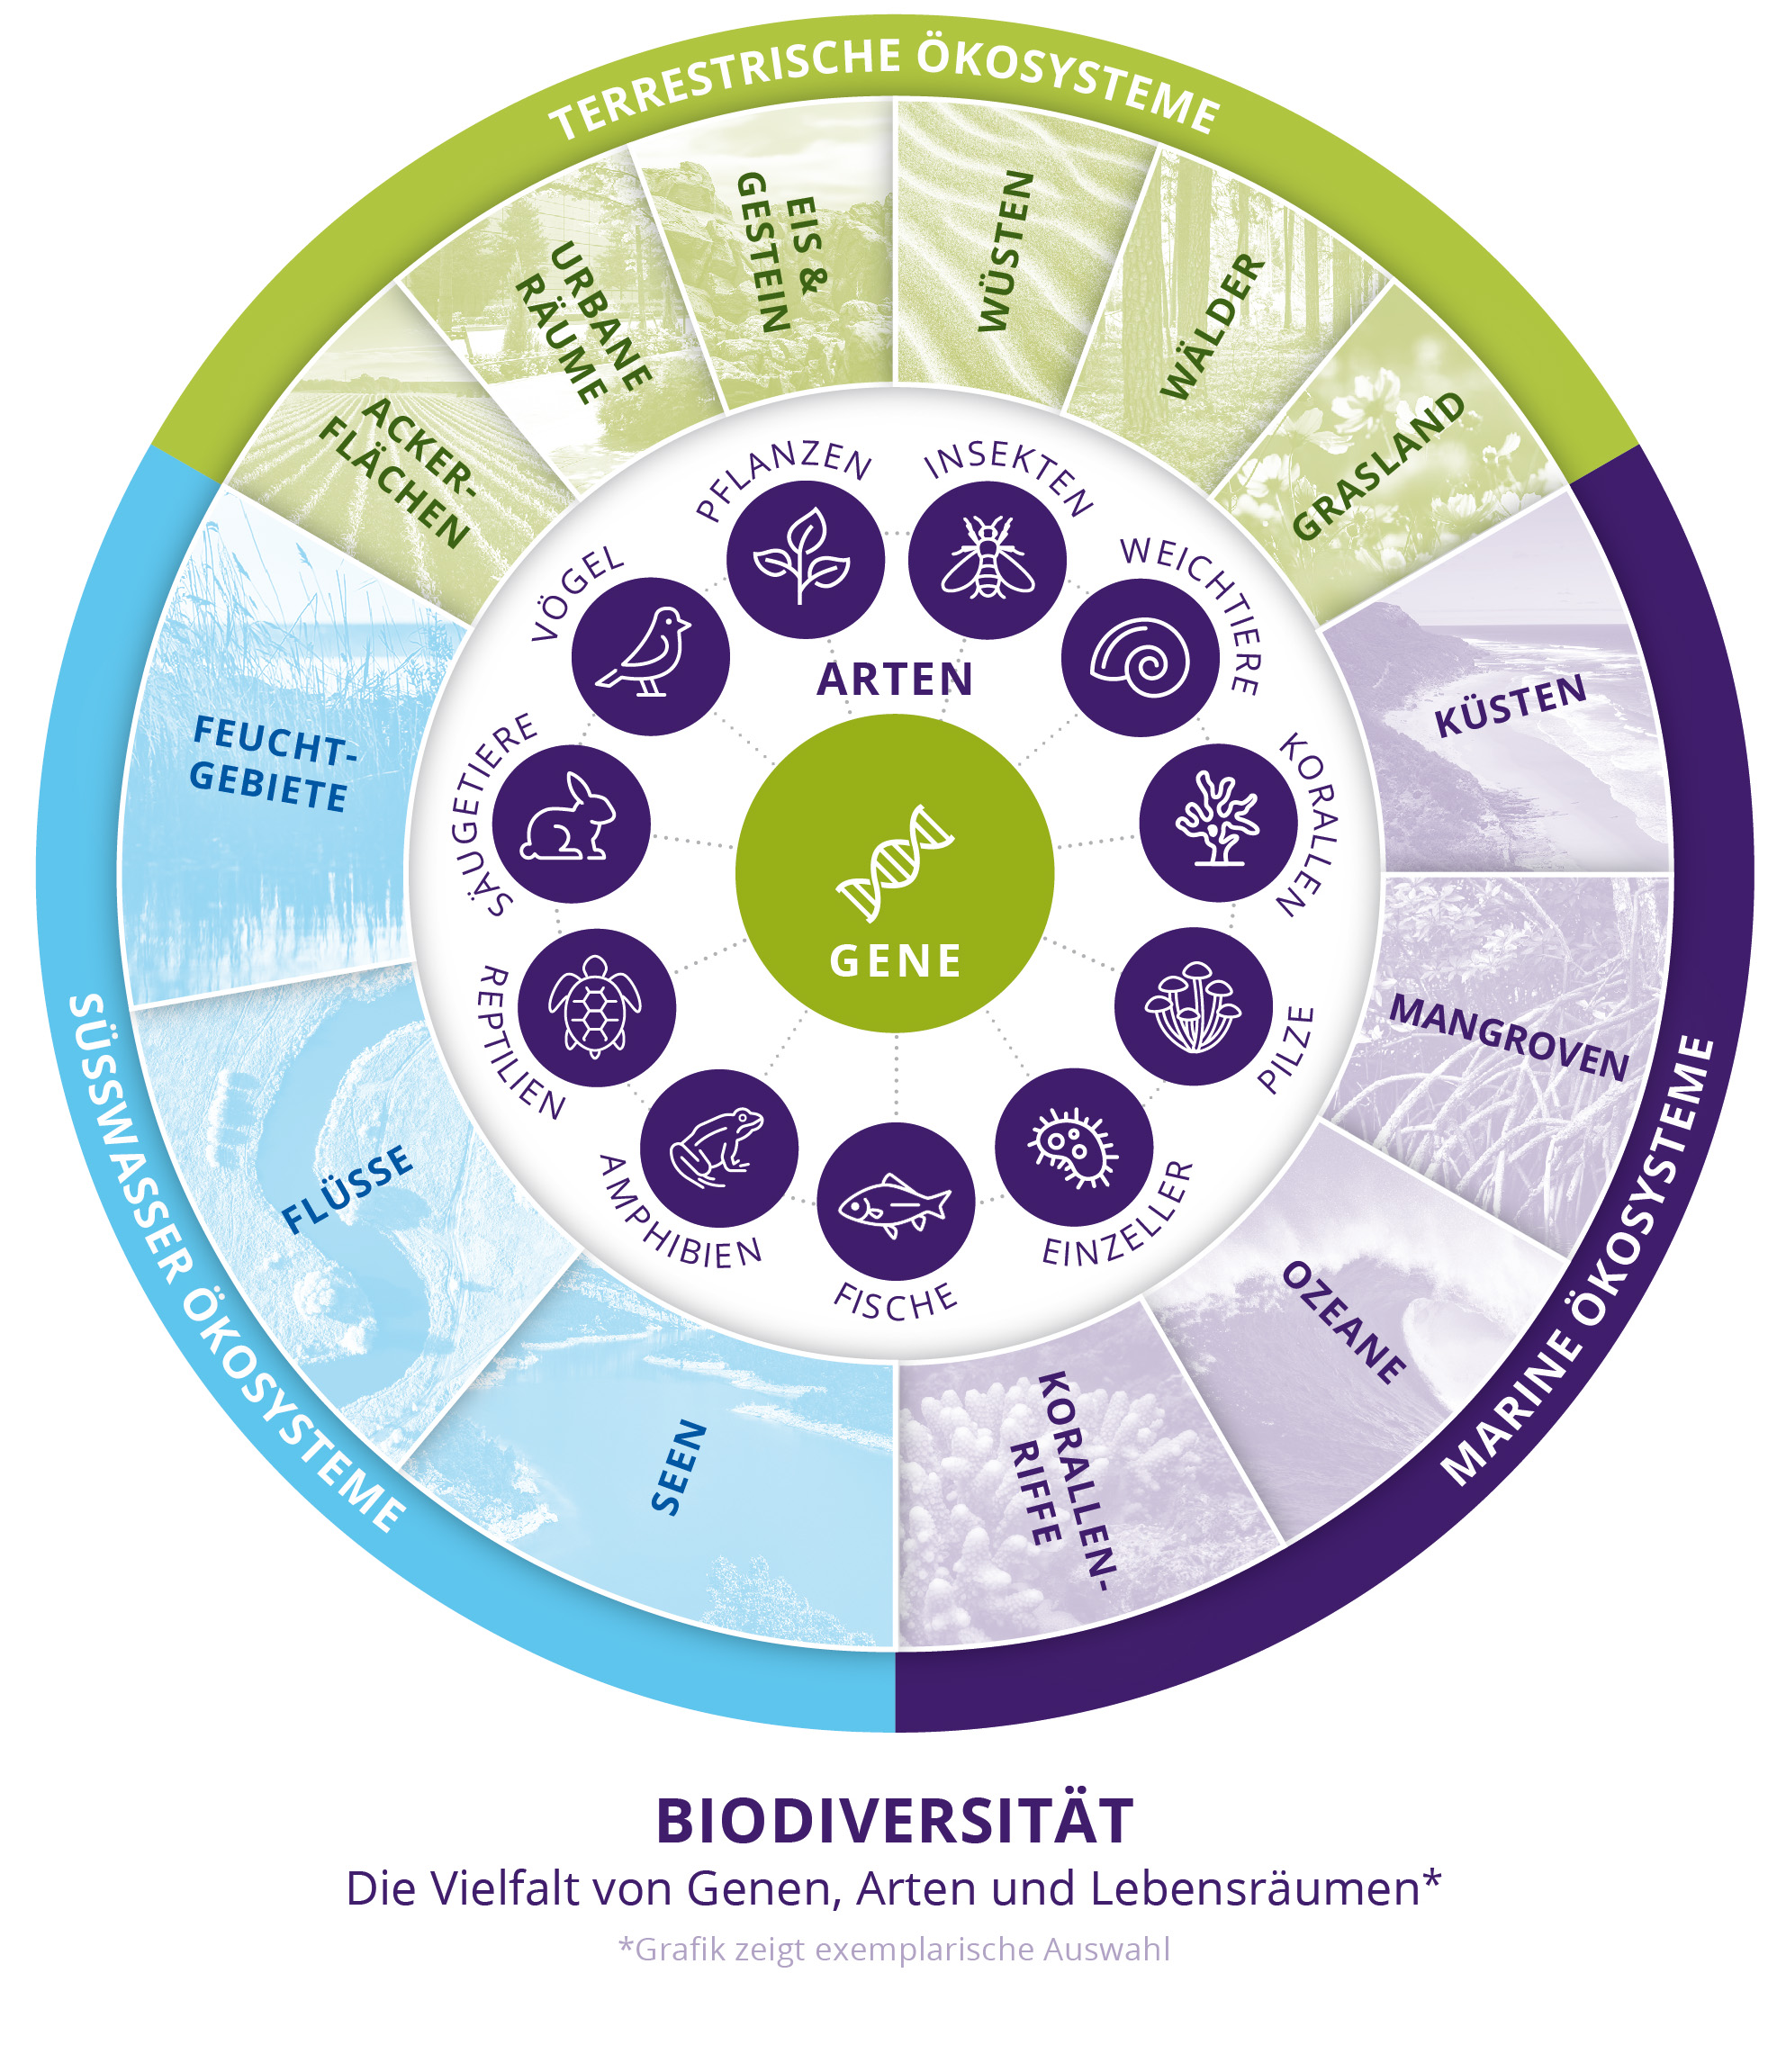 Biodiversitätskreis